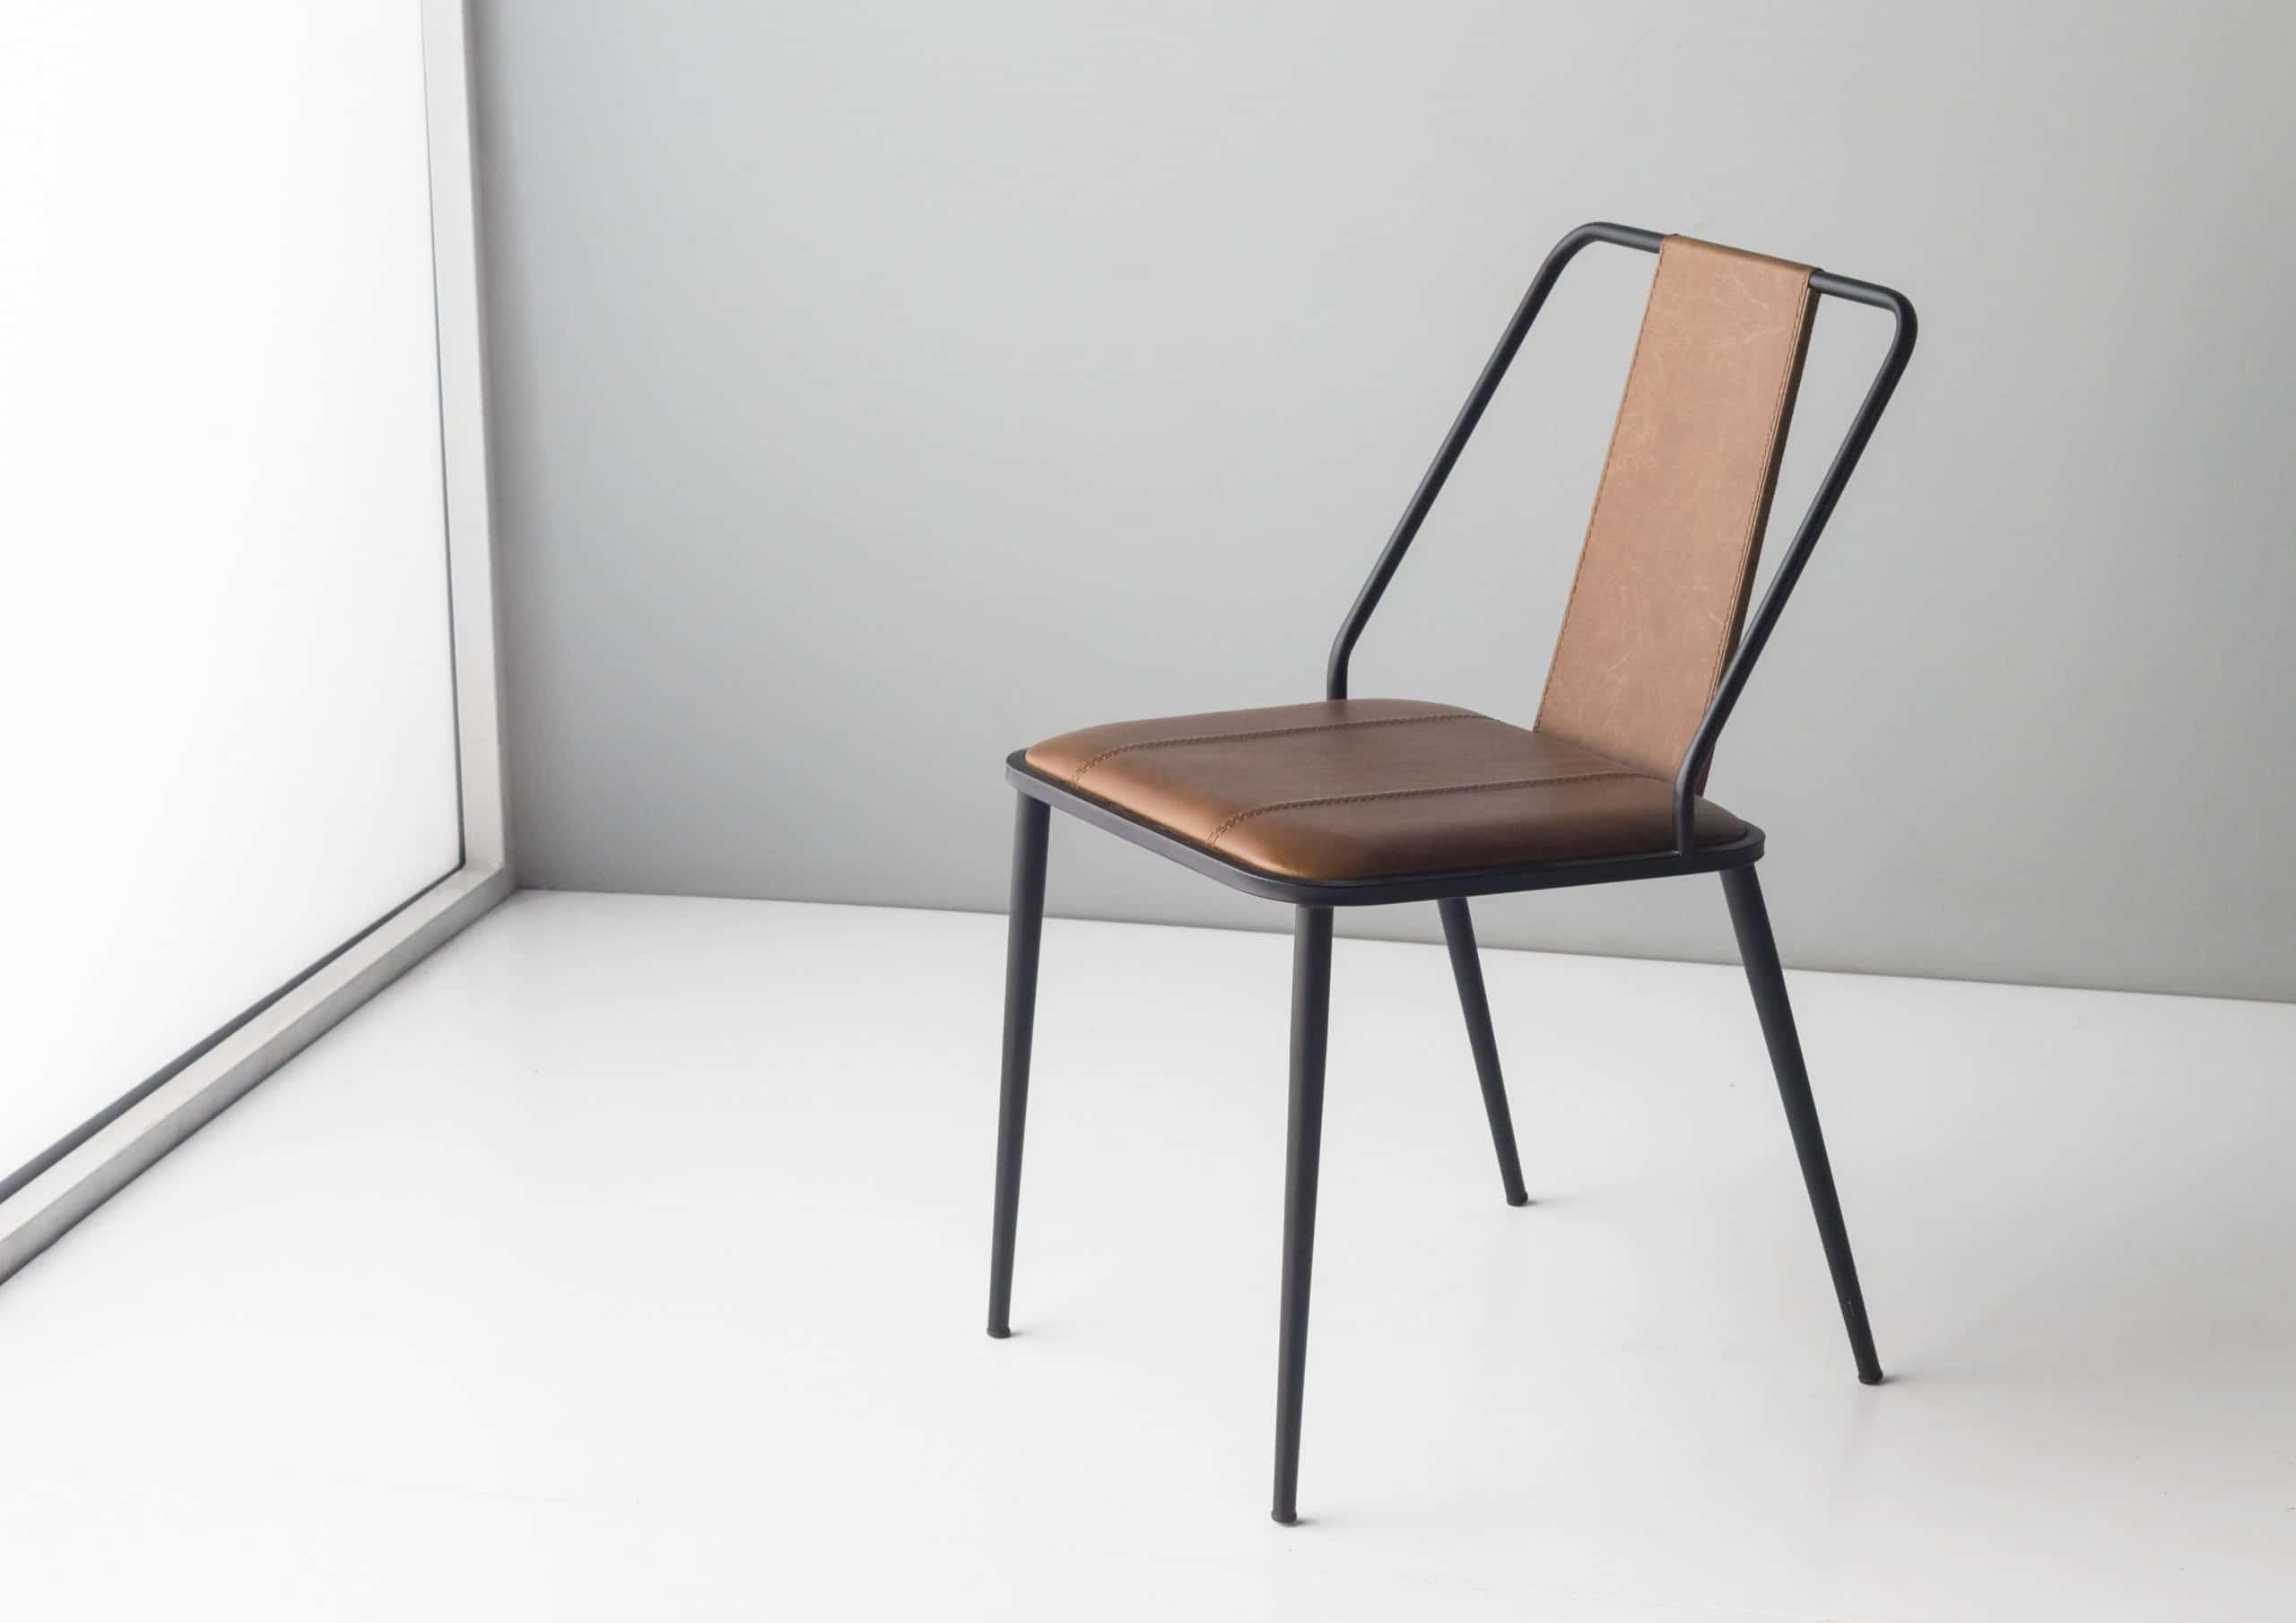 Mook-Stuhl von Doimo Brasil
Abmessungen: B 55 x T 46 x H 81 cm 
MATERIALIEN: Metall, Sitz gepolstert. 


Mit der Absicht, guten Geschmack und Persönlichkeit zu vermitteln, entschlüsselt Doimo Trends und folgt der Entwicklung des Menschen und seines